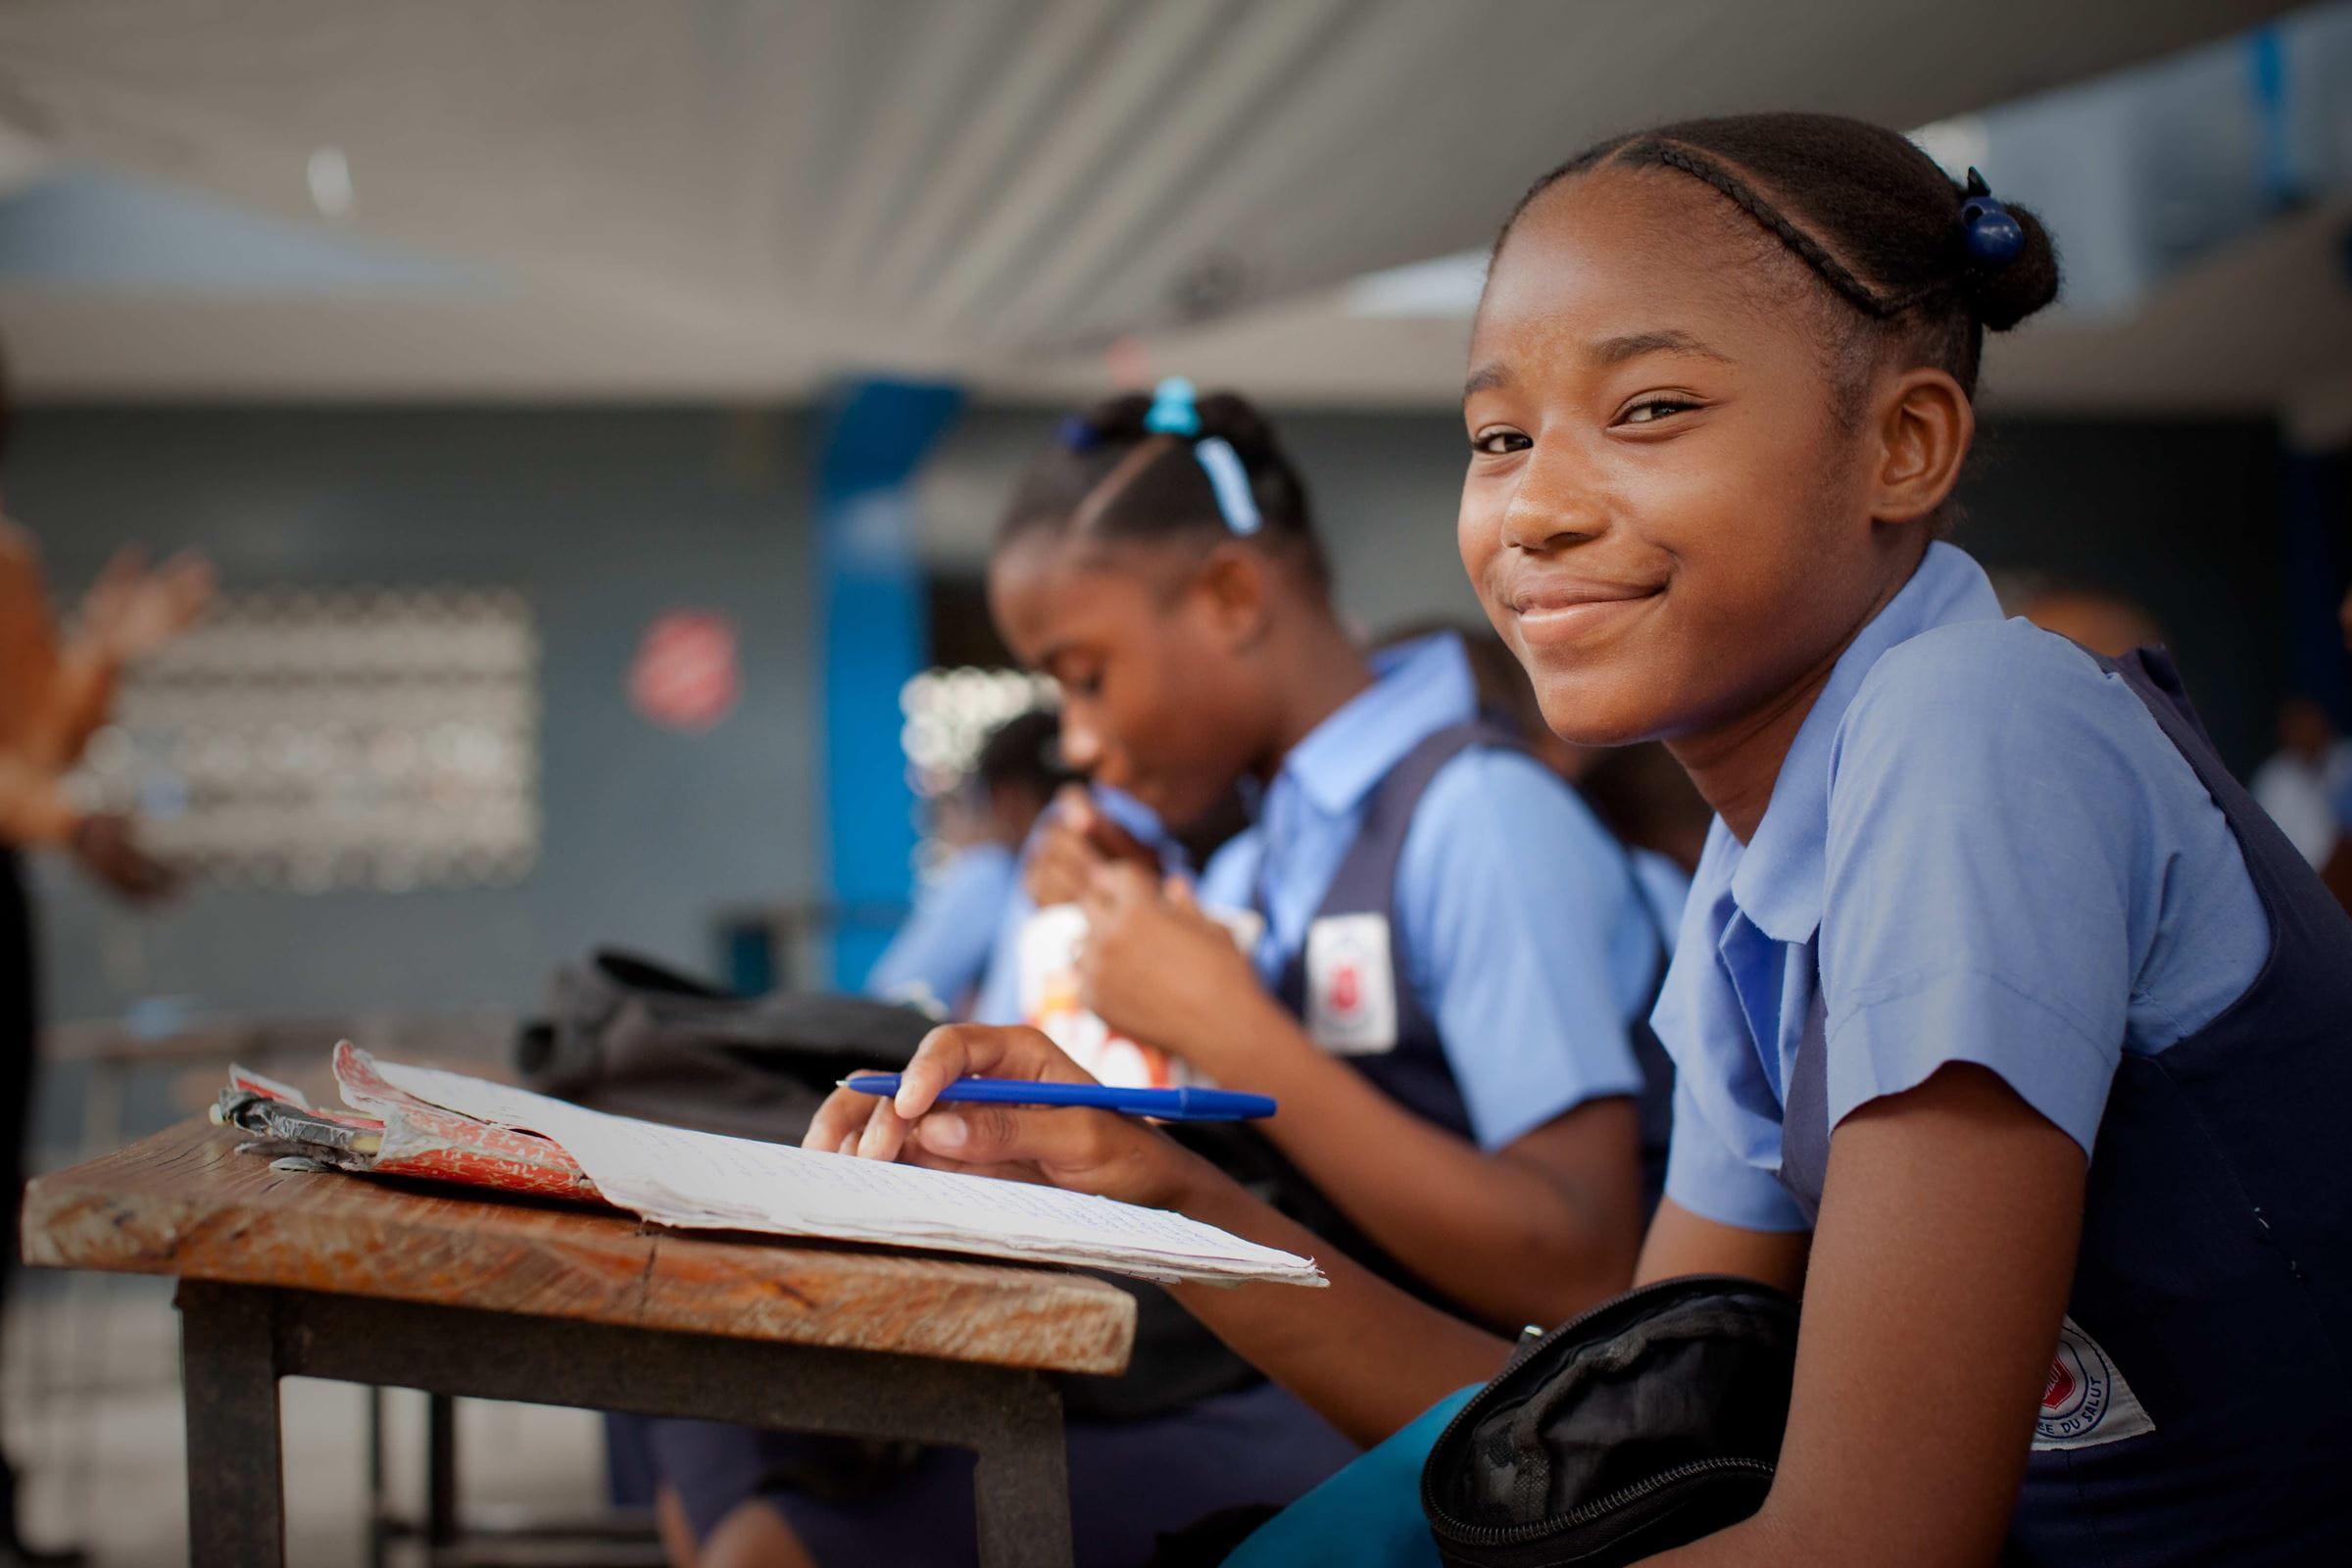 Mädchen sitzt in Schuluniform in einem Klassenraum und lächelt. (Quelle: Kpindernothilfe)